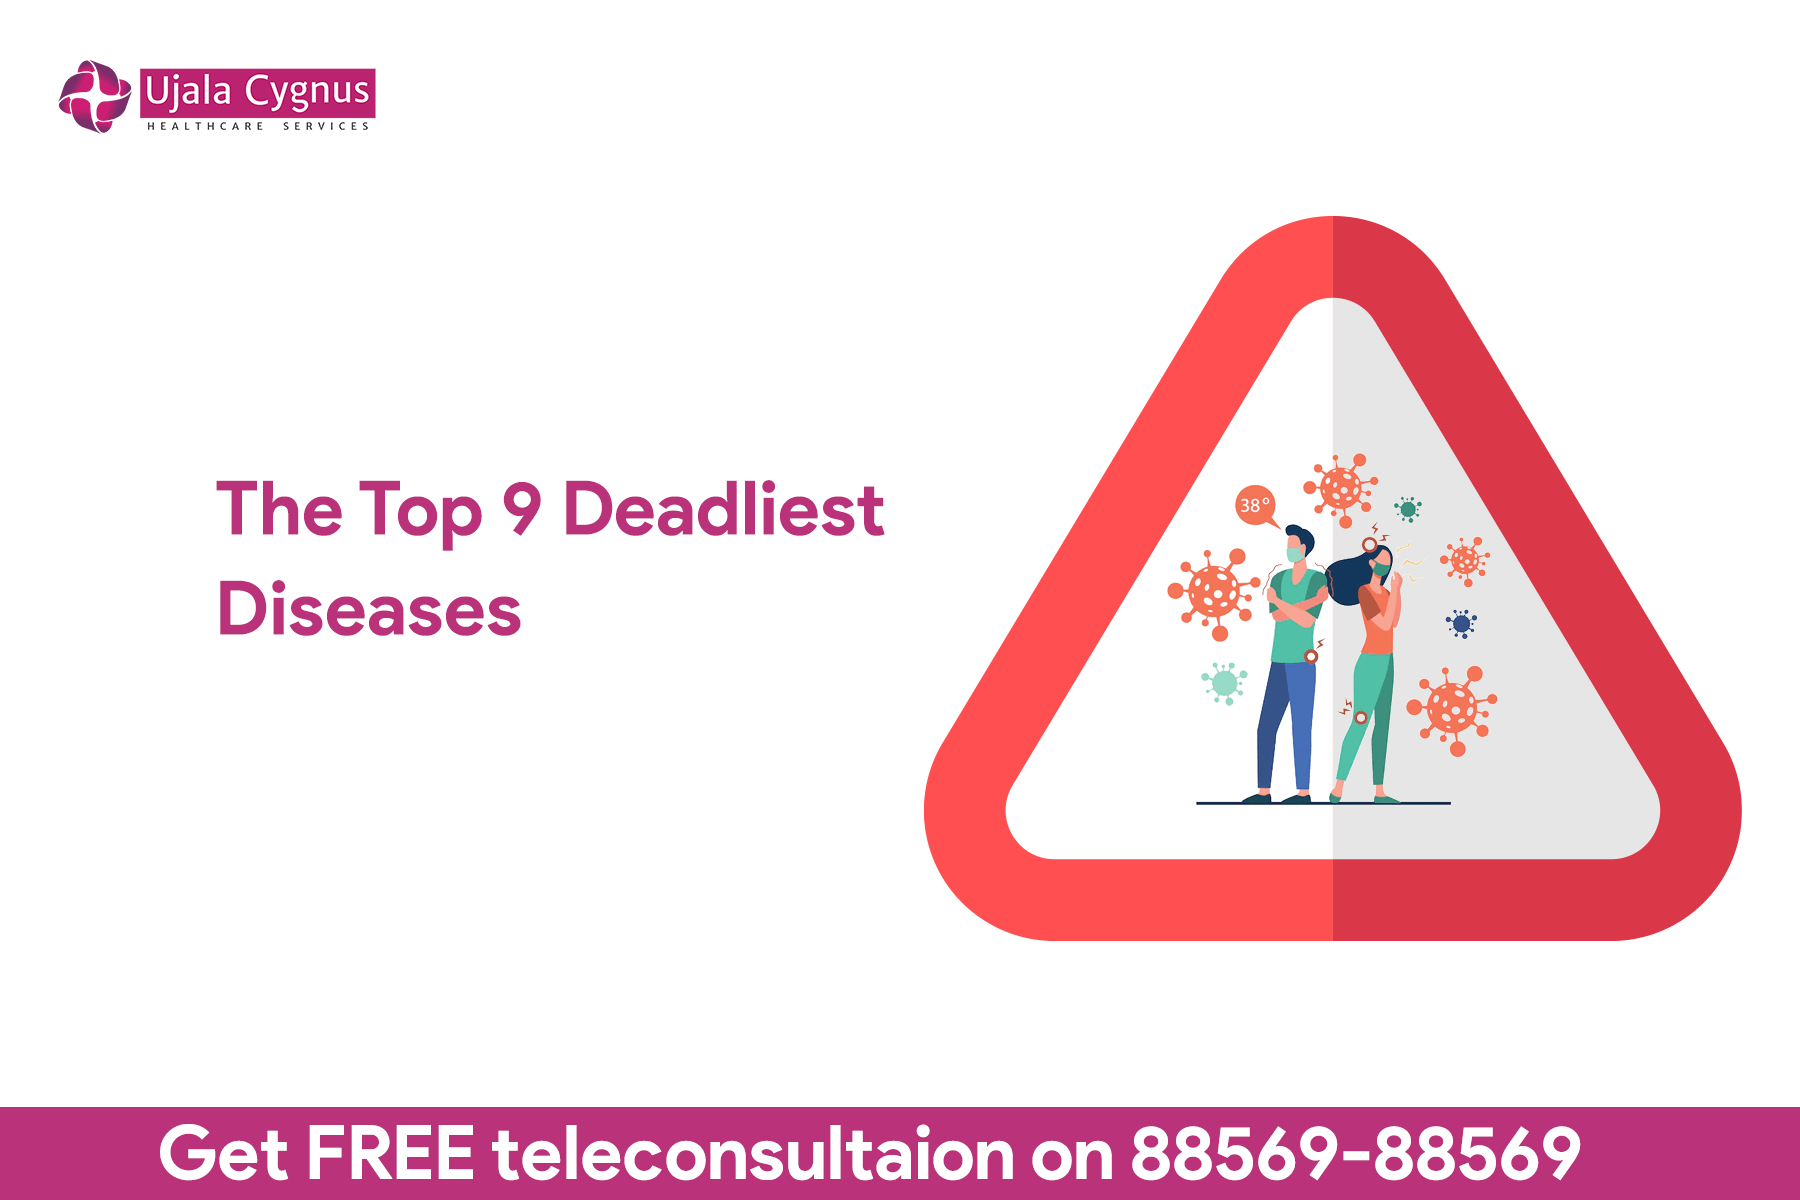 The Top 9 Deadliest Diseases